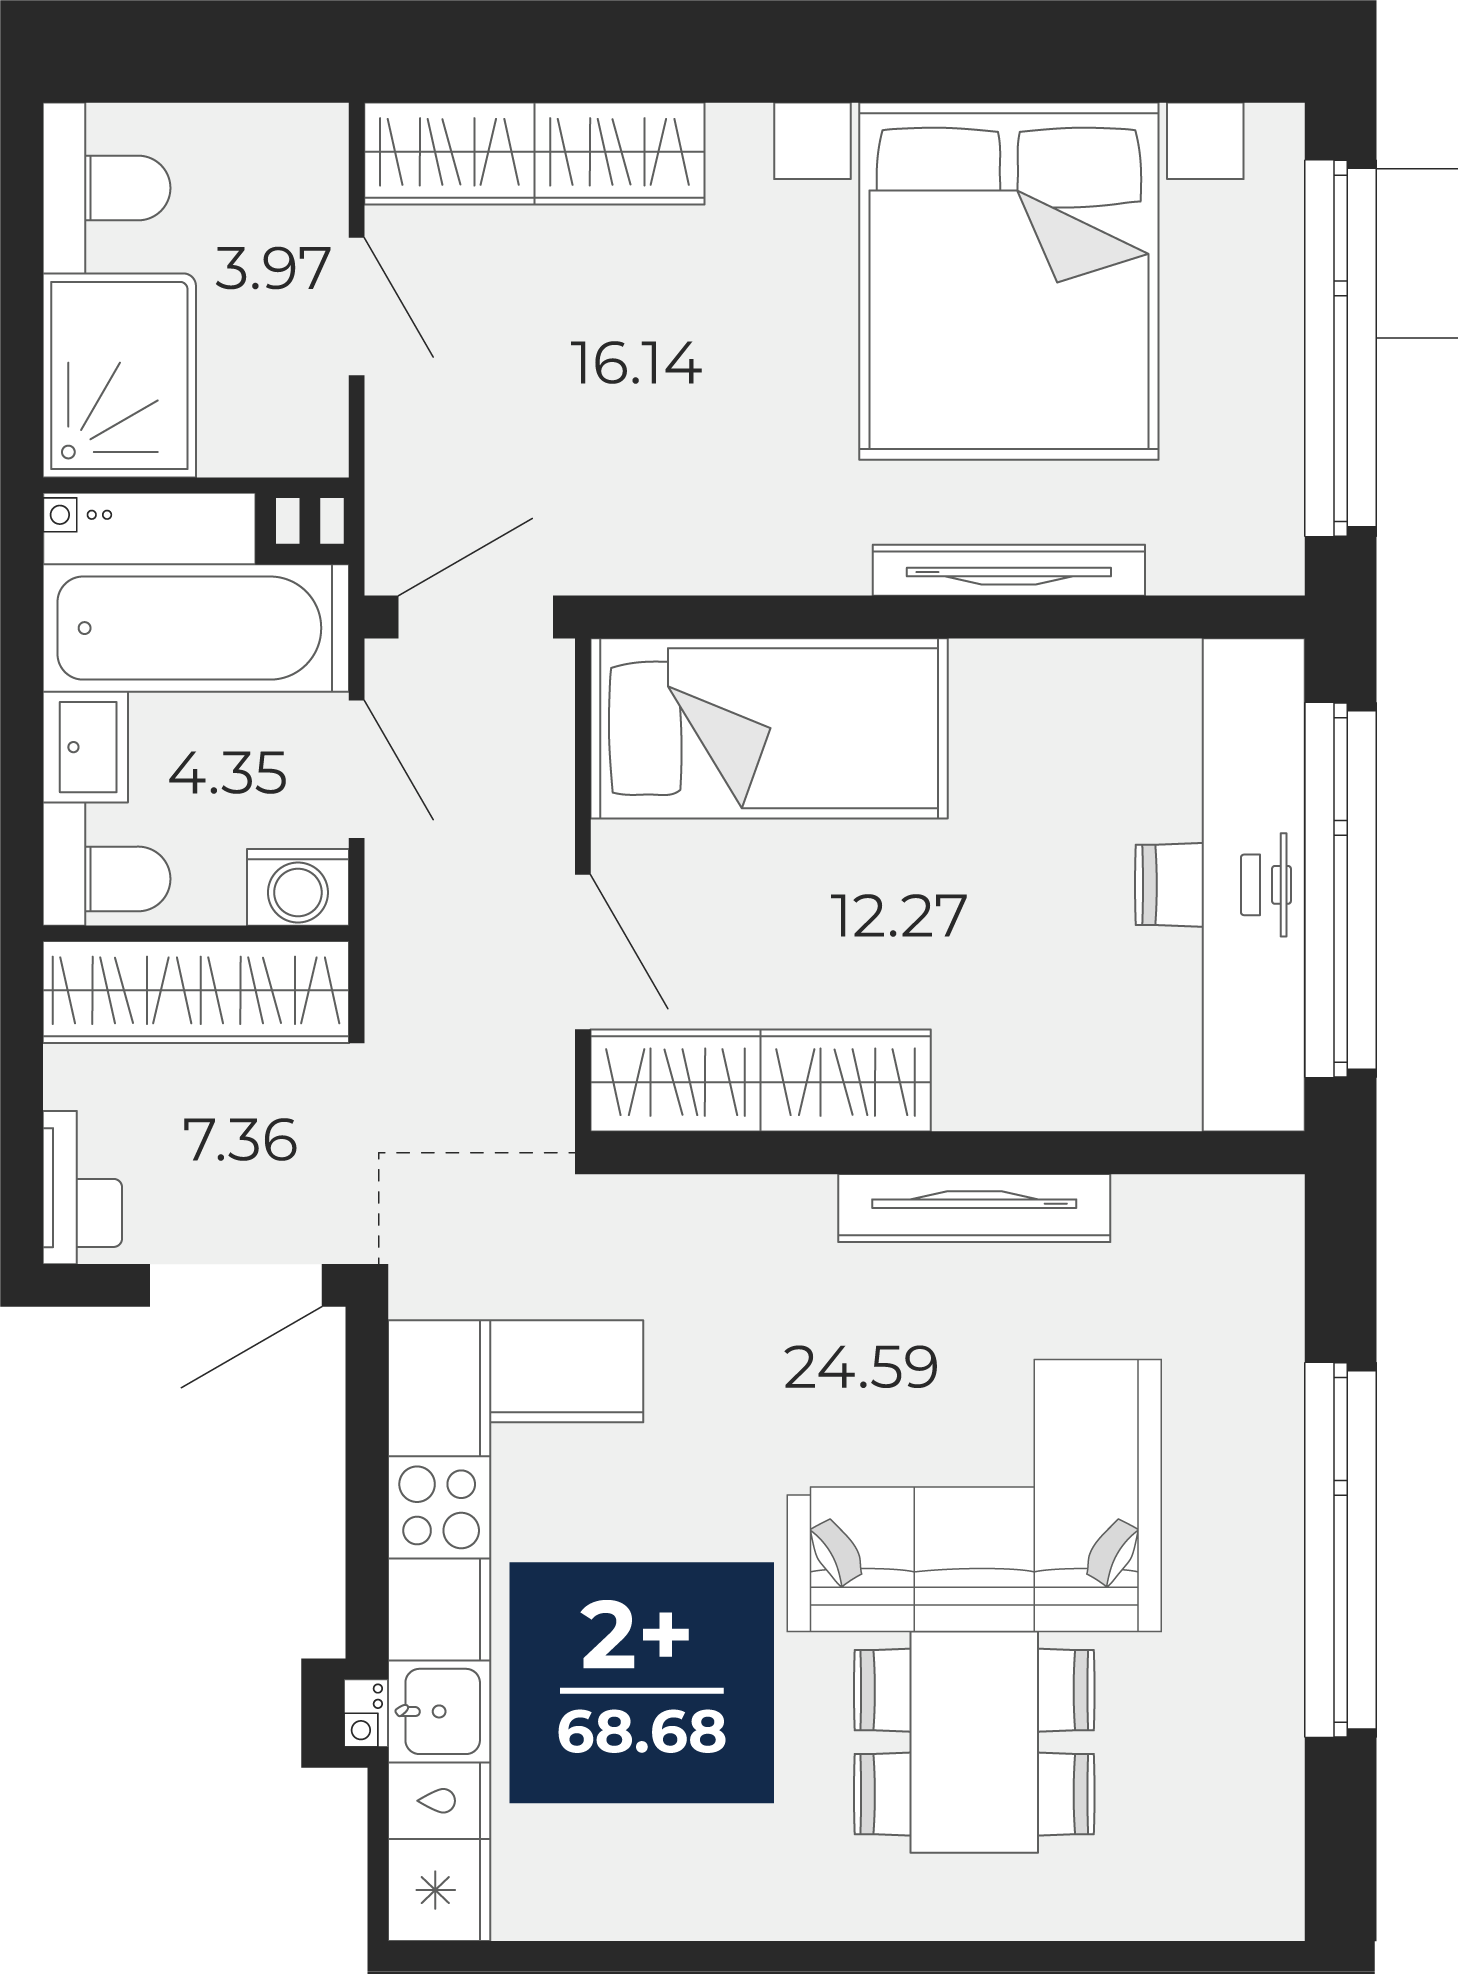 Квартира № 8, 2-комнатная, 68.68 кв. м, 2 этаж